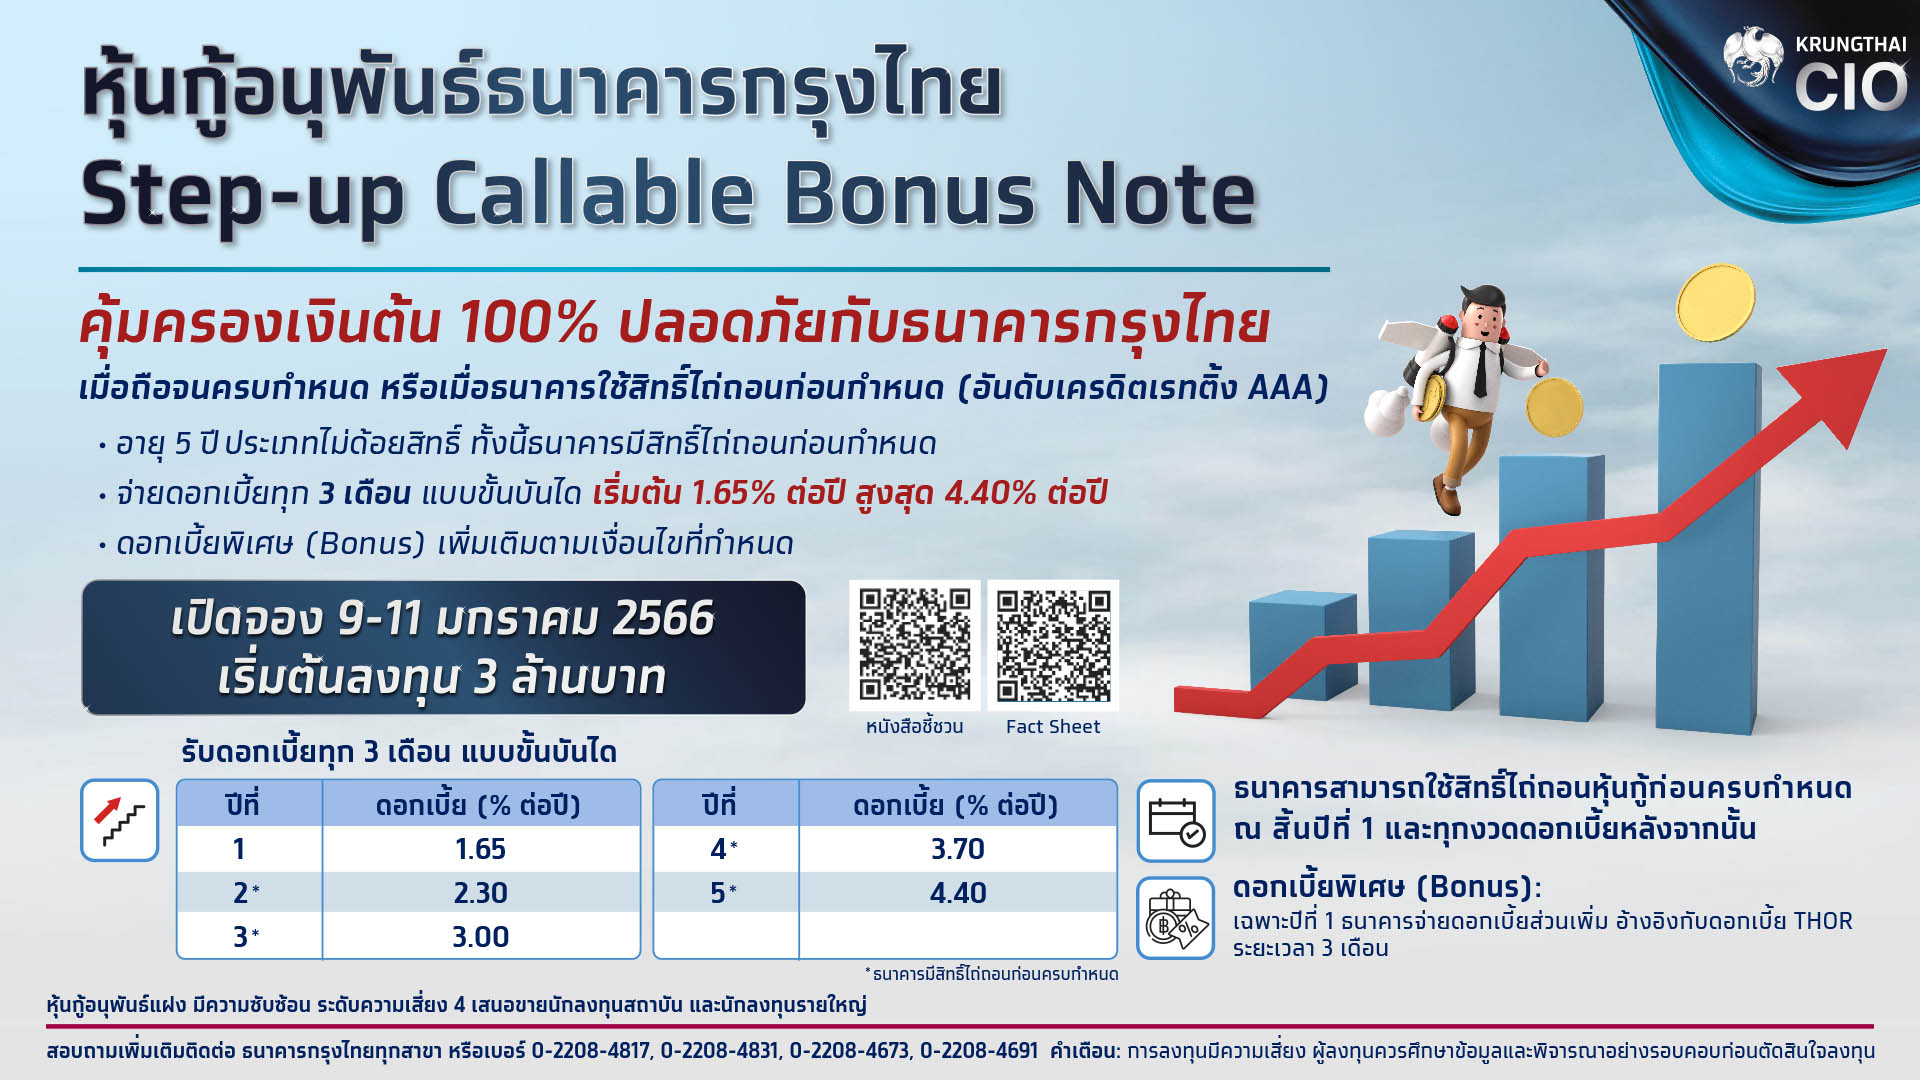 “กรุงไทย” เปิดศักราชใหม่การลงทุน เสิร์ฟหุ้นกู้อนุพันธ์แฝง “Step-up Callable Bonus Note” คุ้มครองเงินต้น ดอกเบี้ยสูงสุด 4.40% ต่อปี ตอกย้ำผู้นำตลาด ทำสถิติยอดขายปี 2565 กว่า 22,000 ล้านบาท